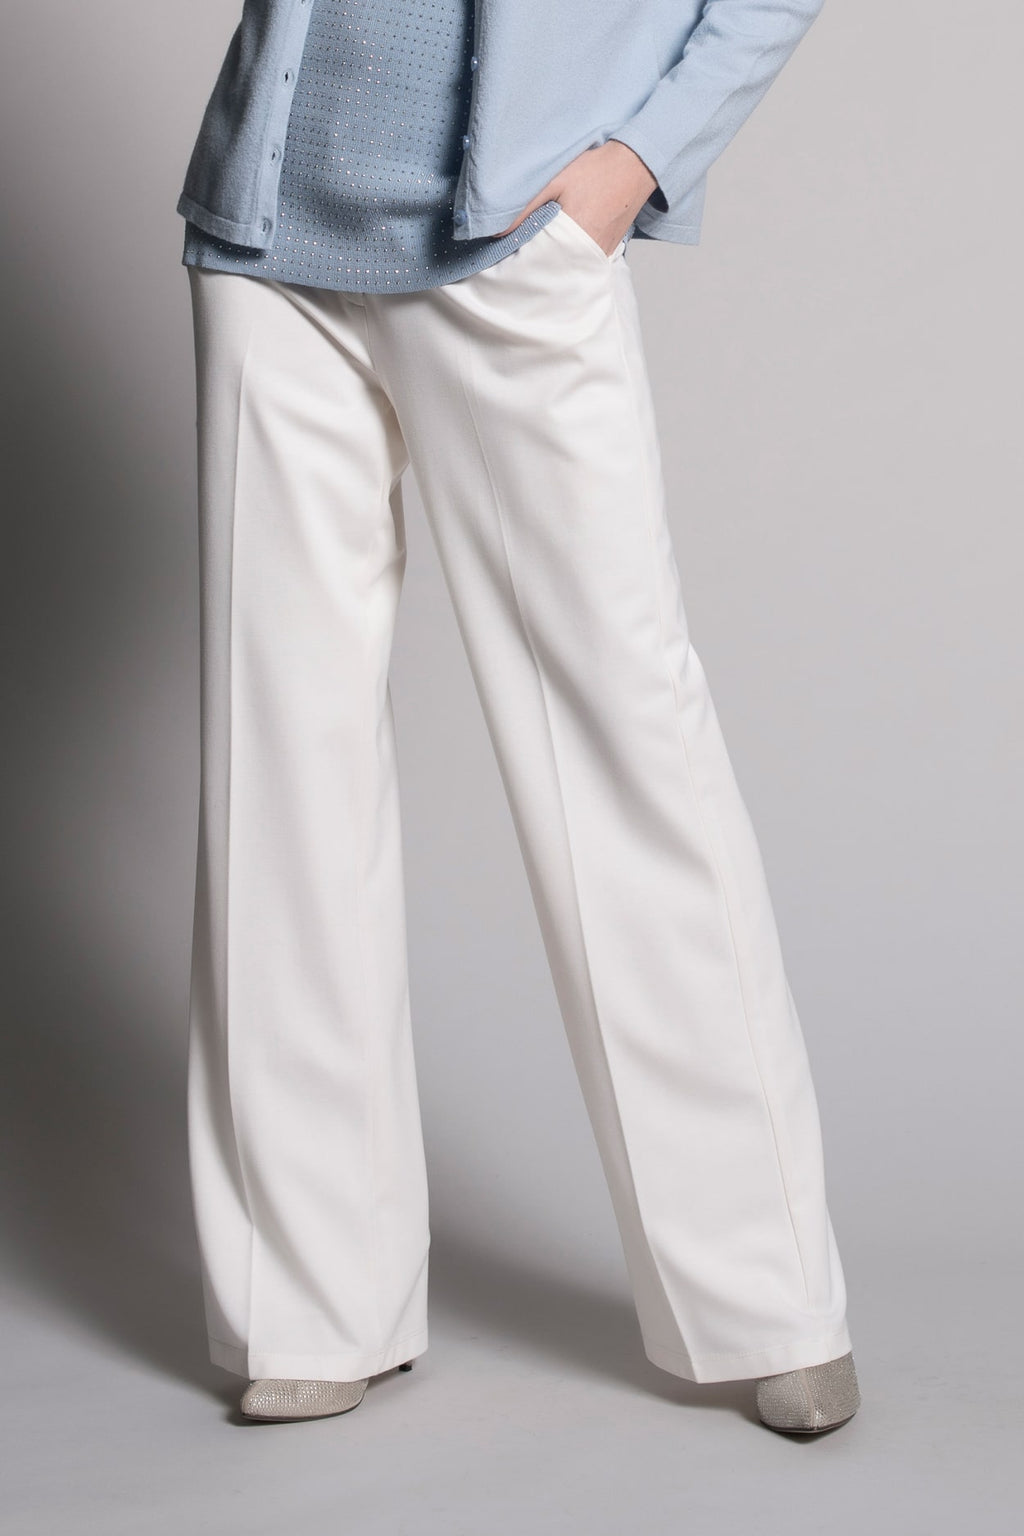 Women's Wide Leg Drawstring Lounge Pants • Size: L/XL (Sizes 10-14